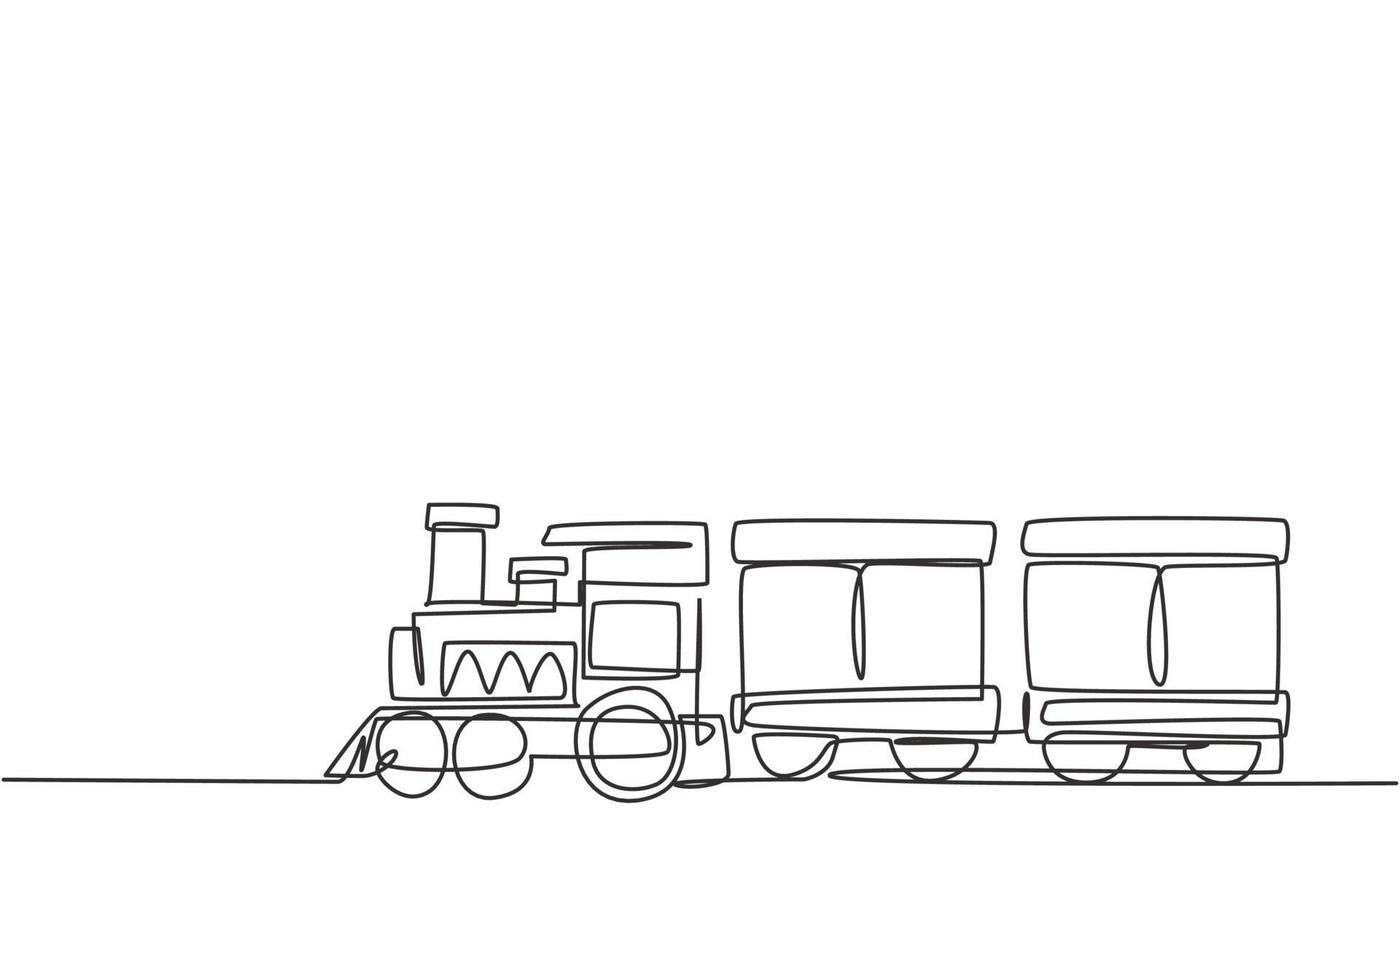 desenho de linha única de uma locomotiva de trem com dois vagões na forma de um sistema de vapor móvel em um parque de diversões para o transporte de passageiros. ilustração em vetor gráfico desenho linha contínua